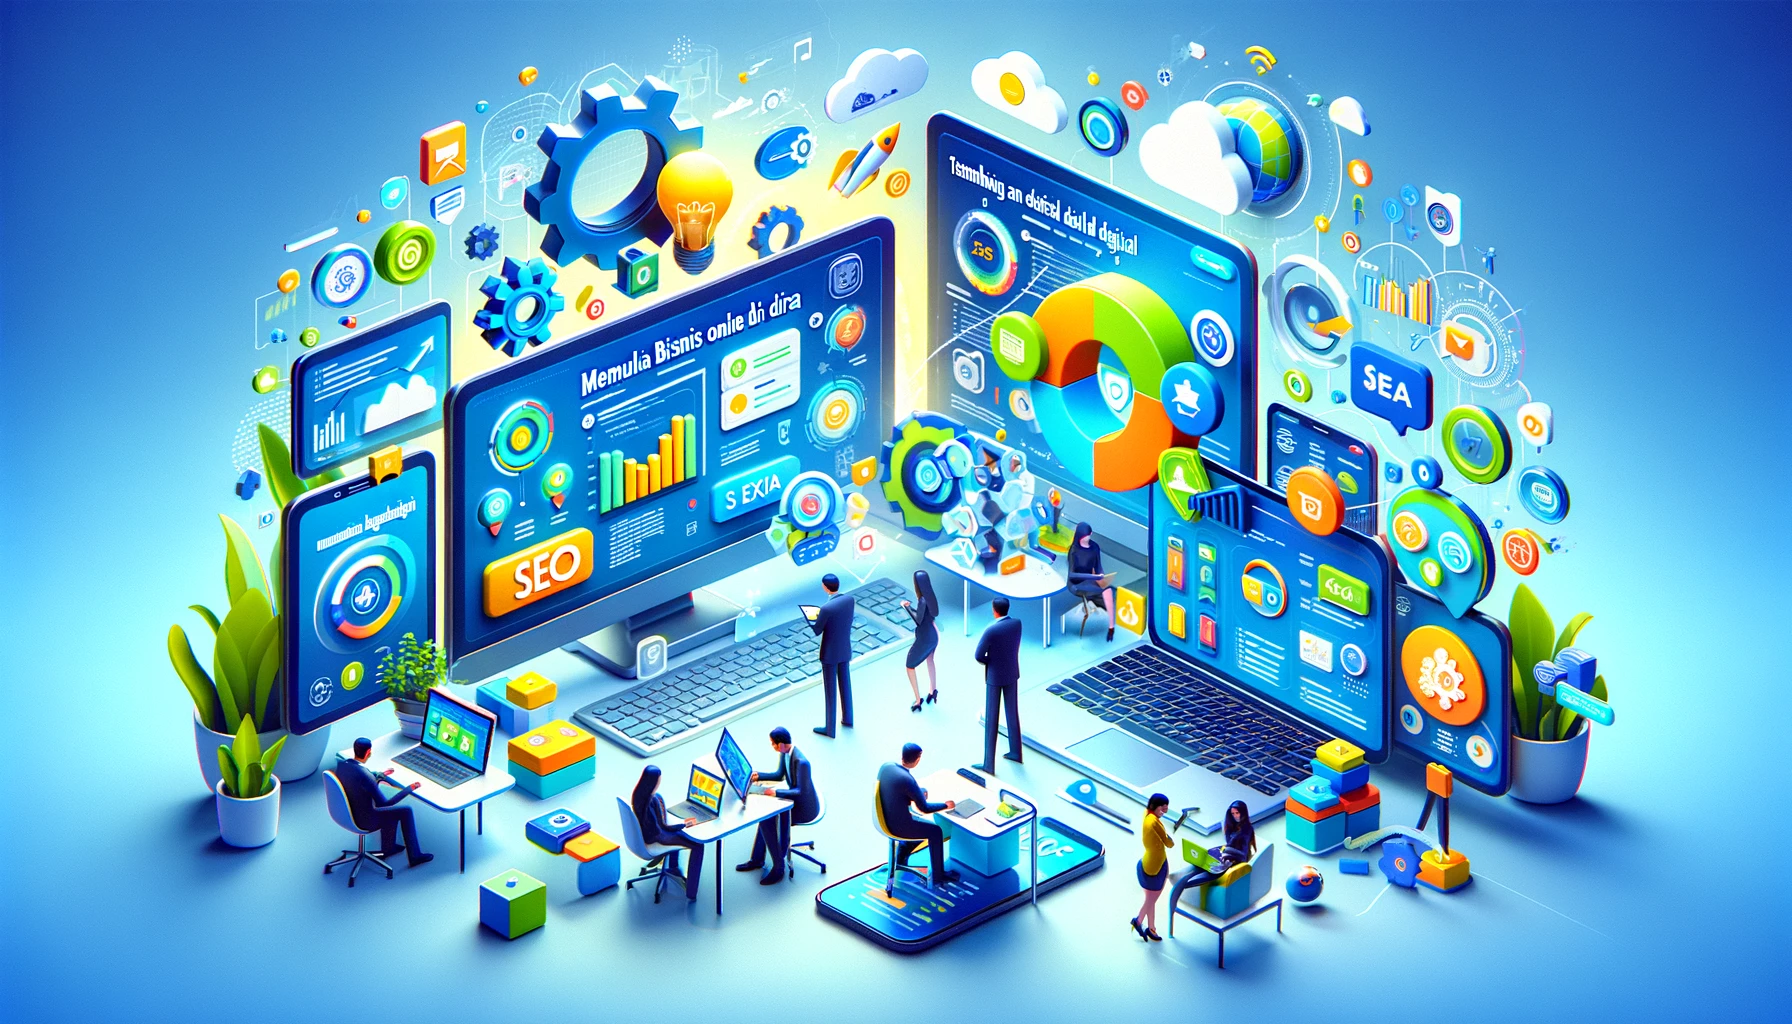 Memulai Bisnis Online di Era Digital Yang Efektif